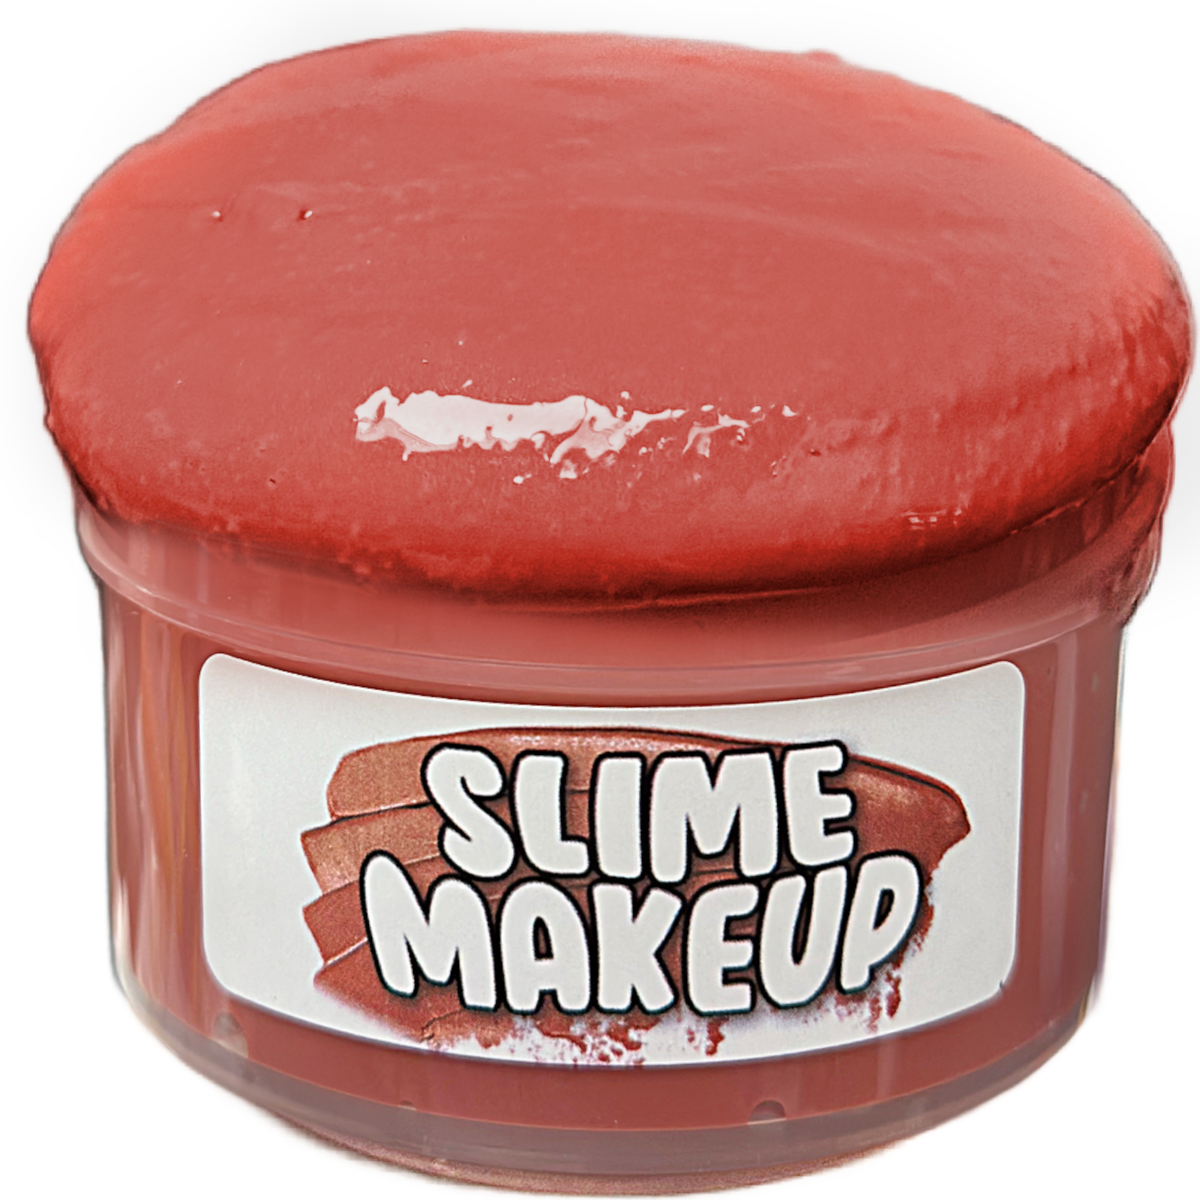 Slime Makeup Slime: Made with real makeup!